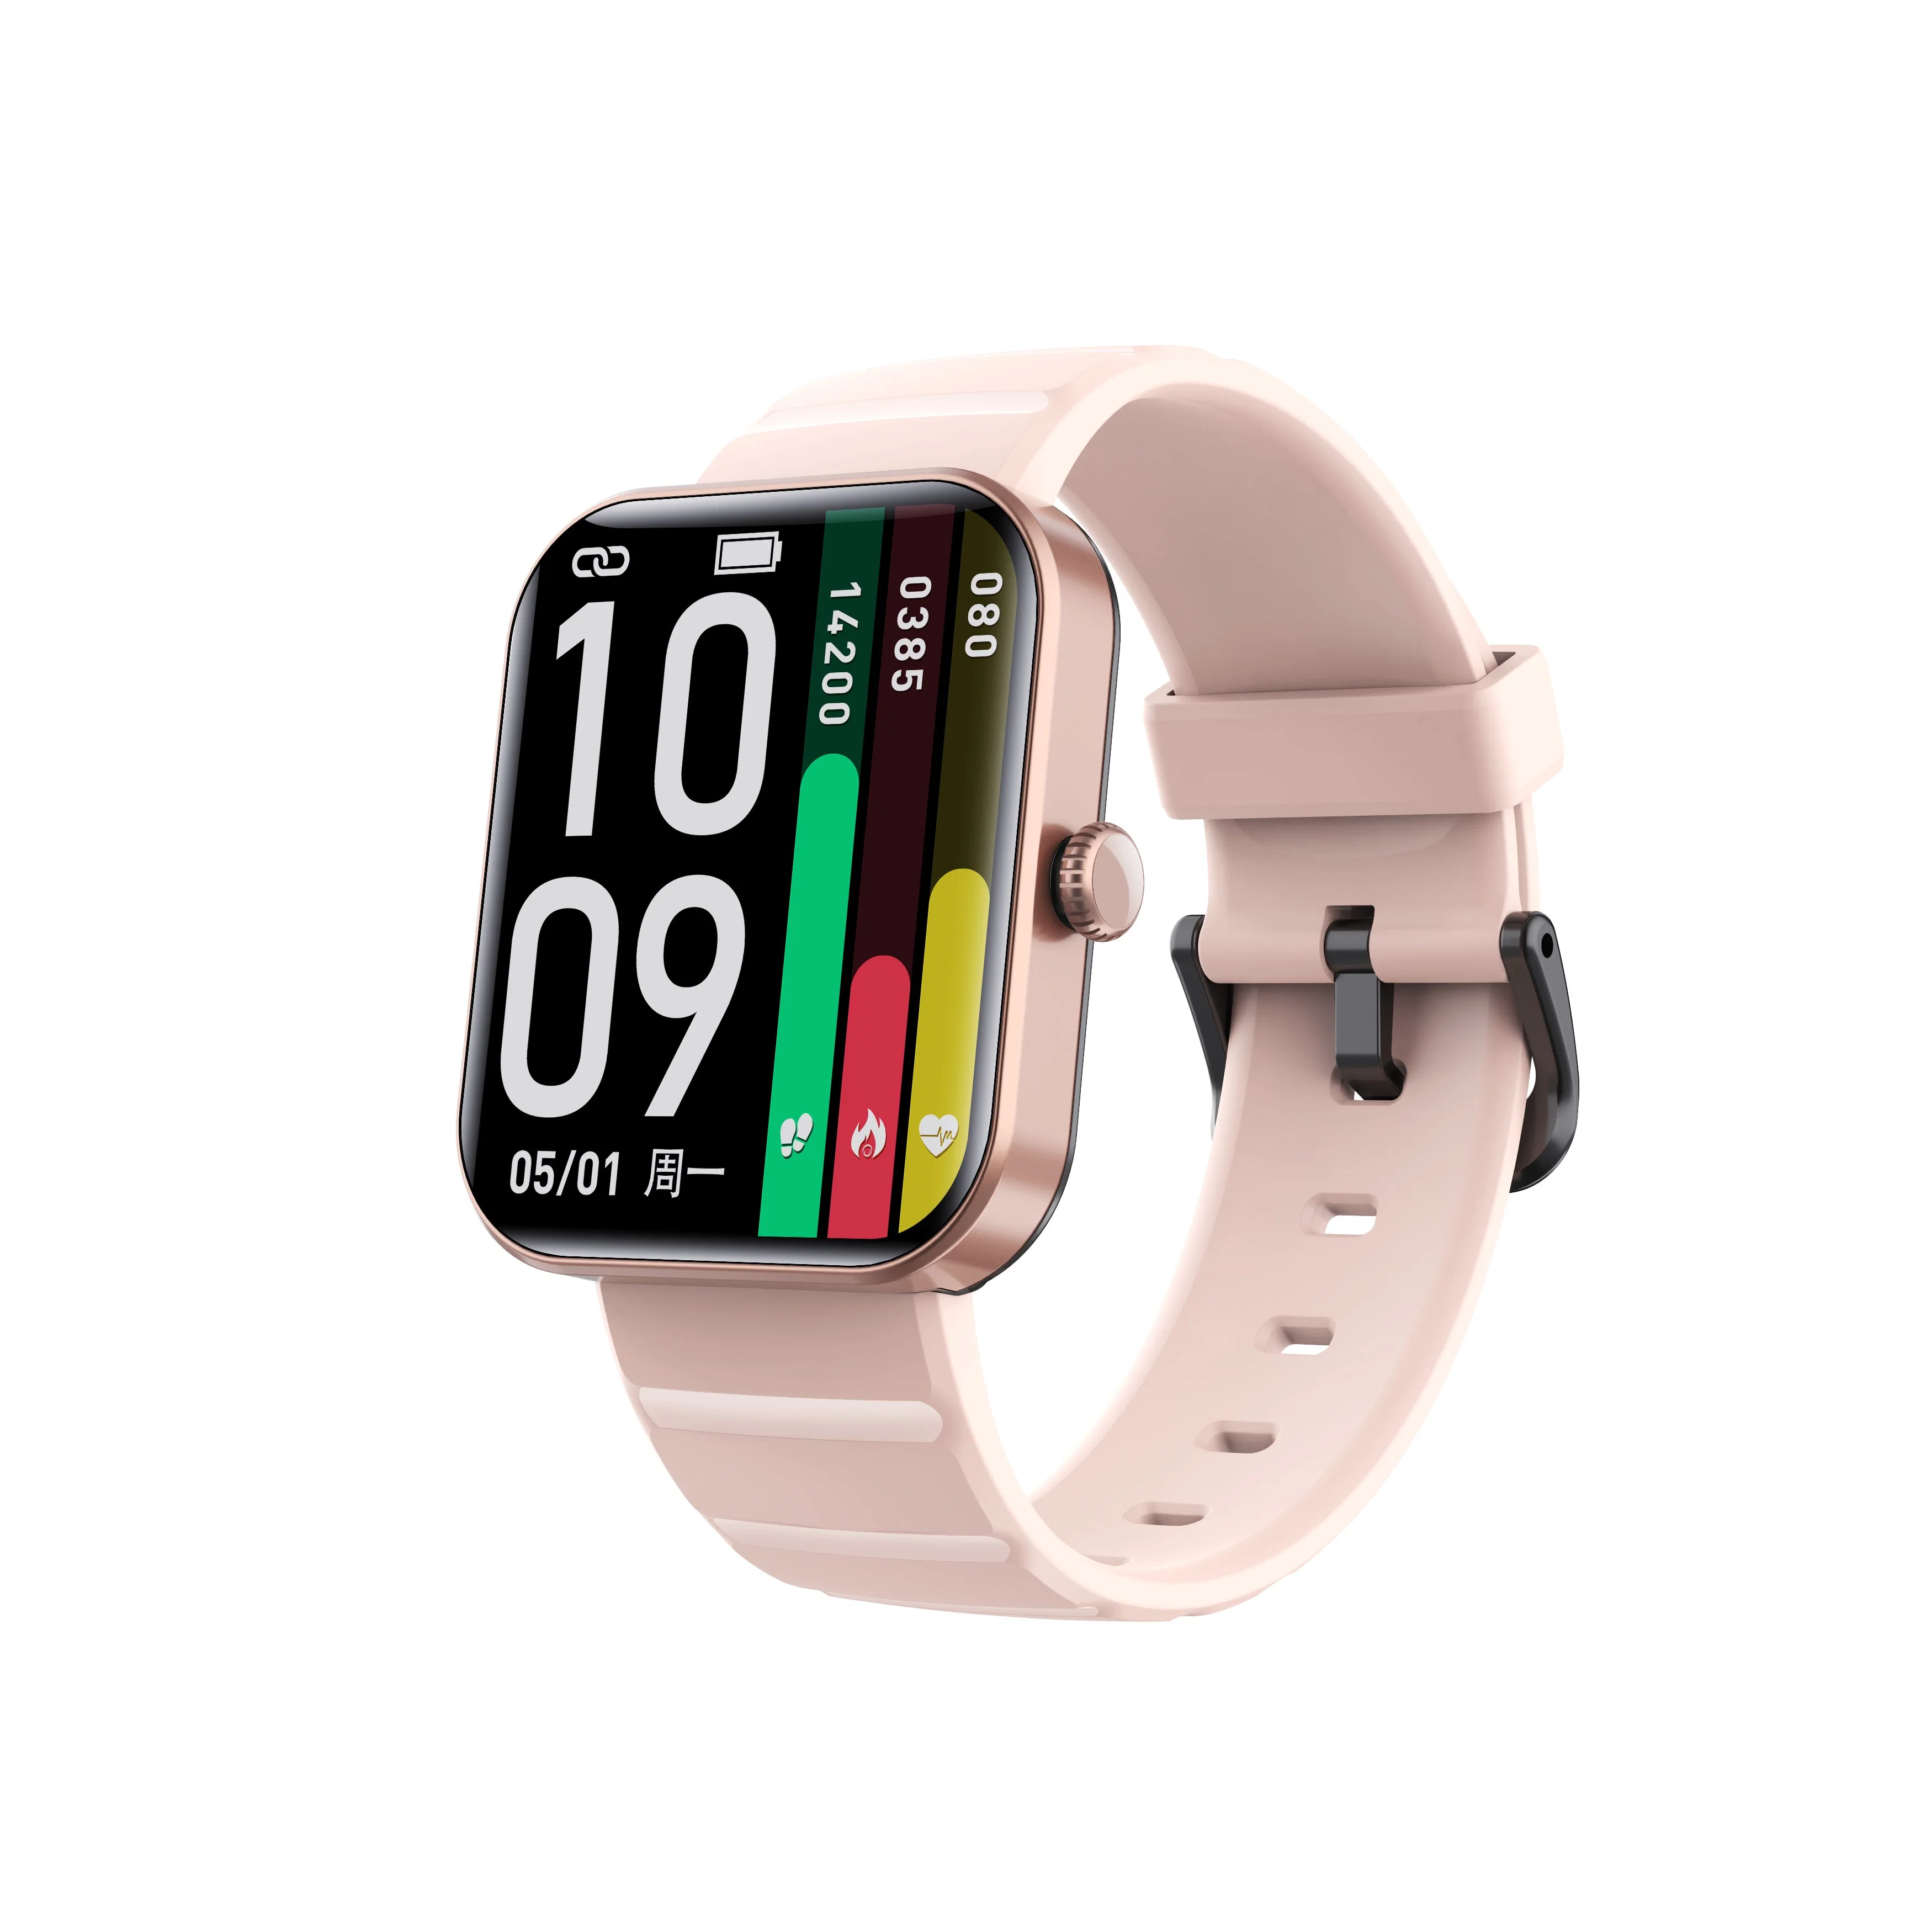 Heißer Verkauf Reloj Intelligente Smart Watch Kh21 Gesundheit Fitness Tracker Smartwatch Mit Intelligentem Armband